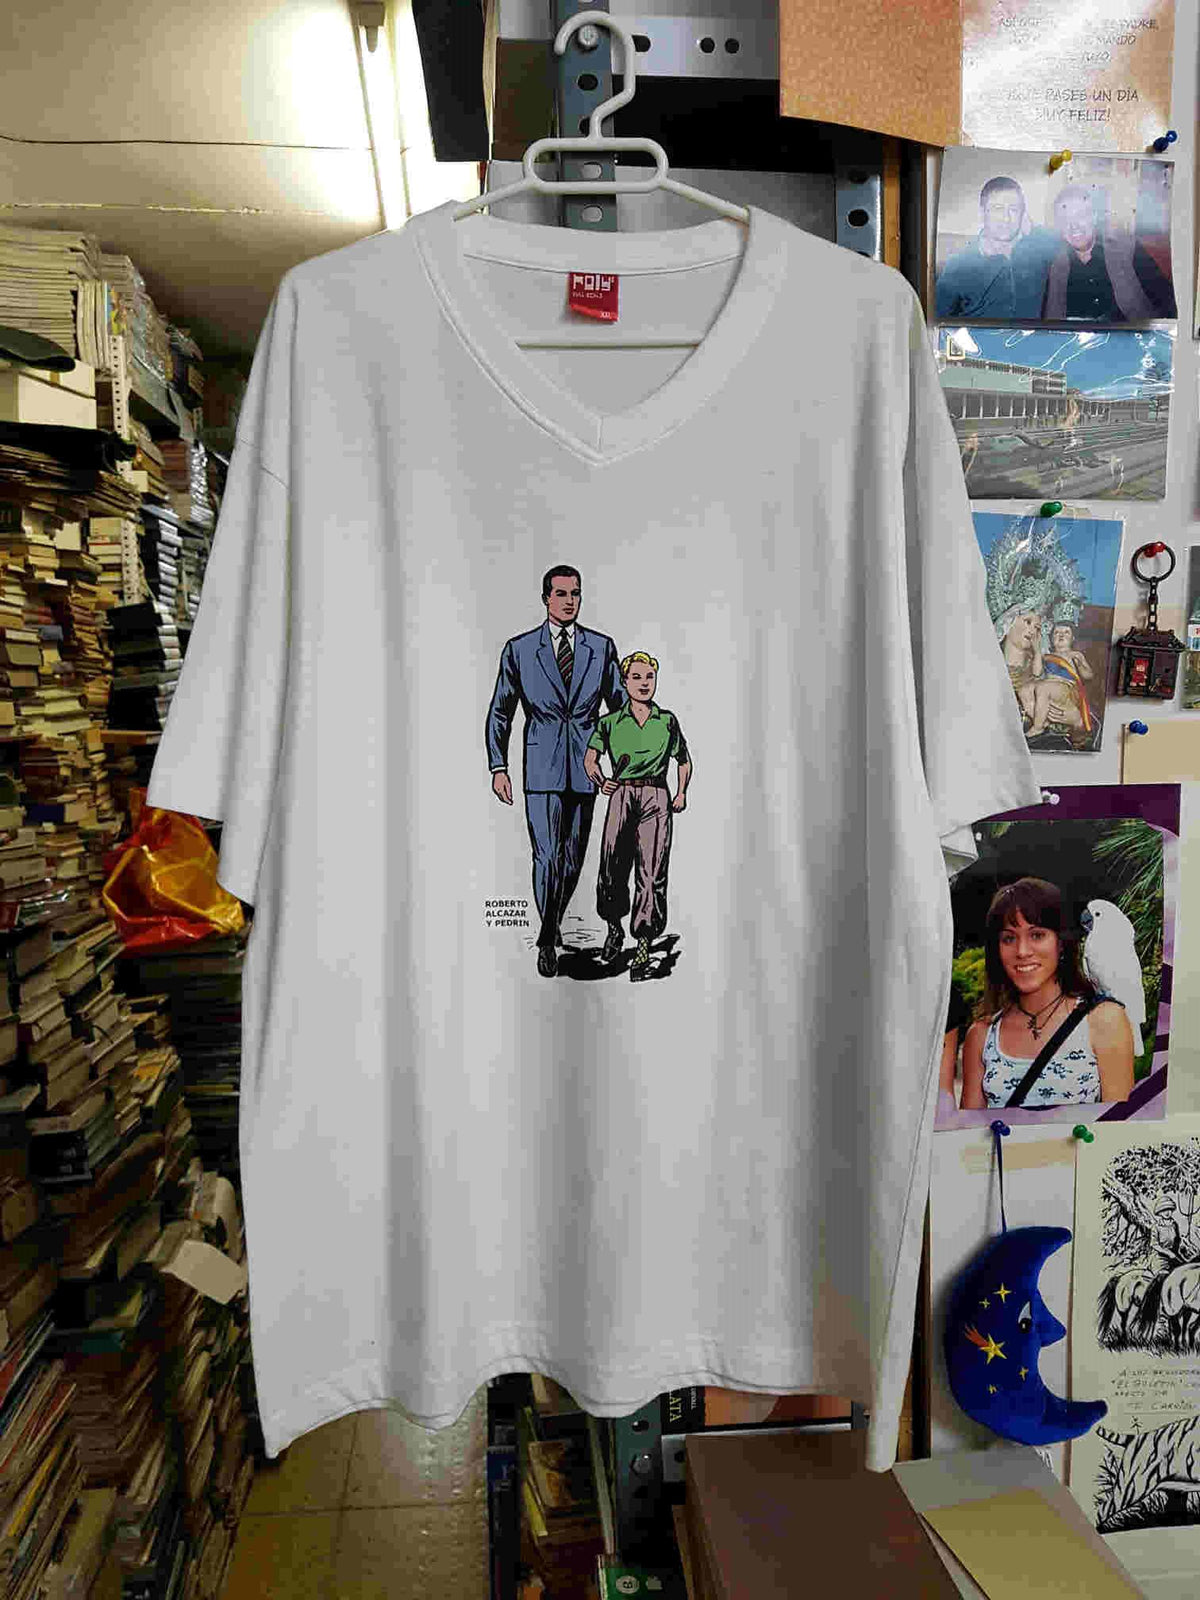 Camiseta blanca de Roberto Alcazar y Pedrin, talla XXL